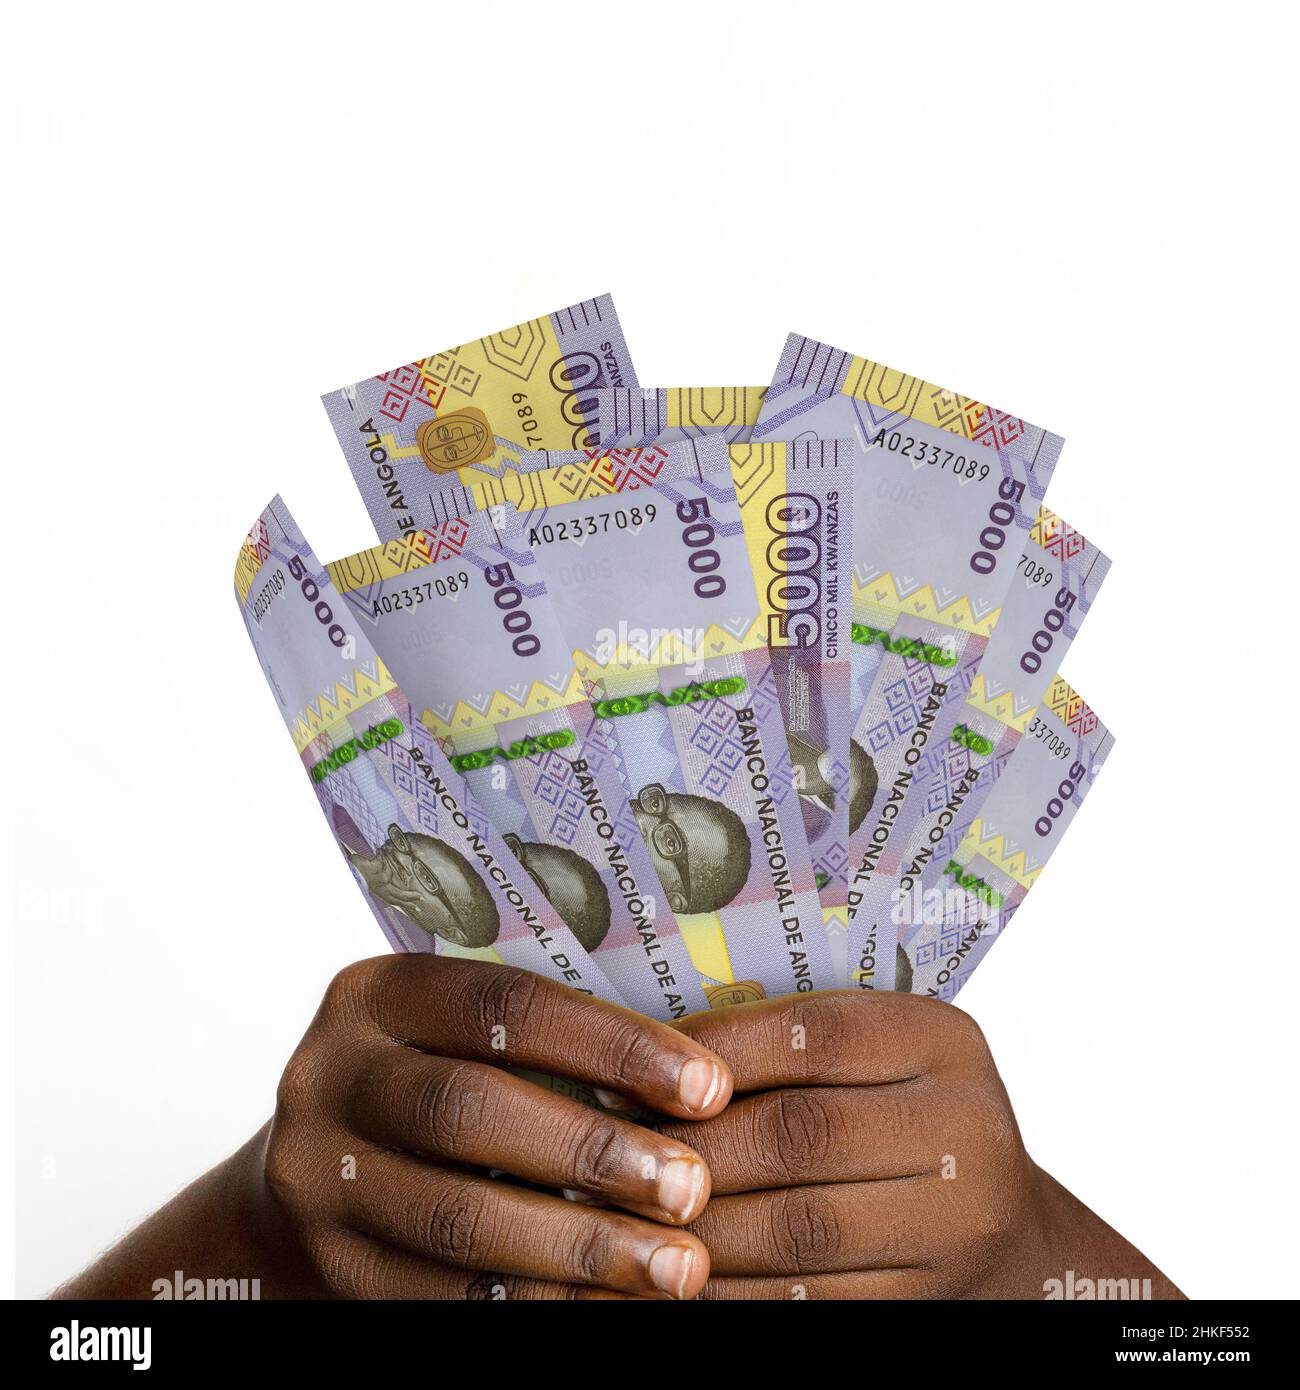 Main noire tenant 3D rendu 5000 notes angolaises kwanza. gros plan des mains tenant des billets en monnaie angolaise Banque D'Images